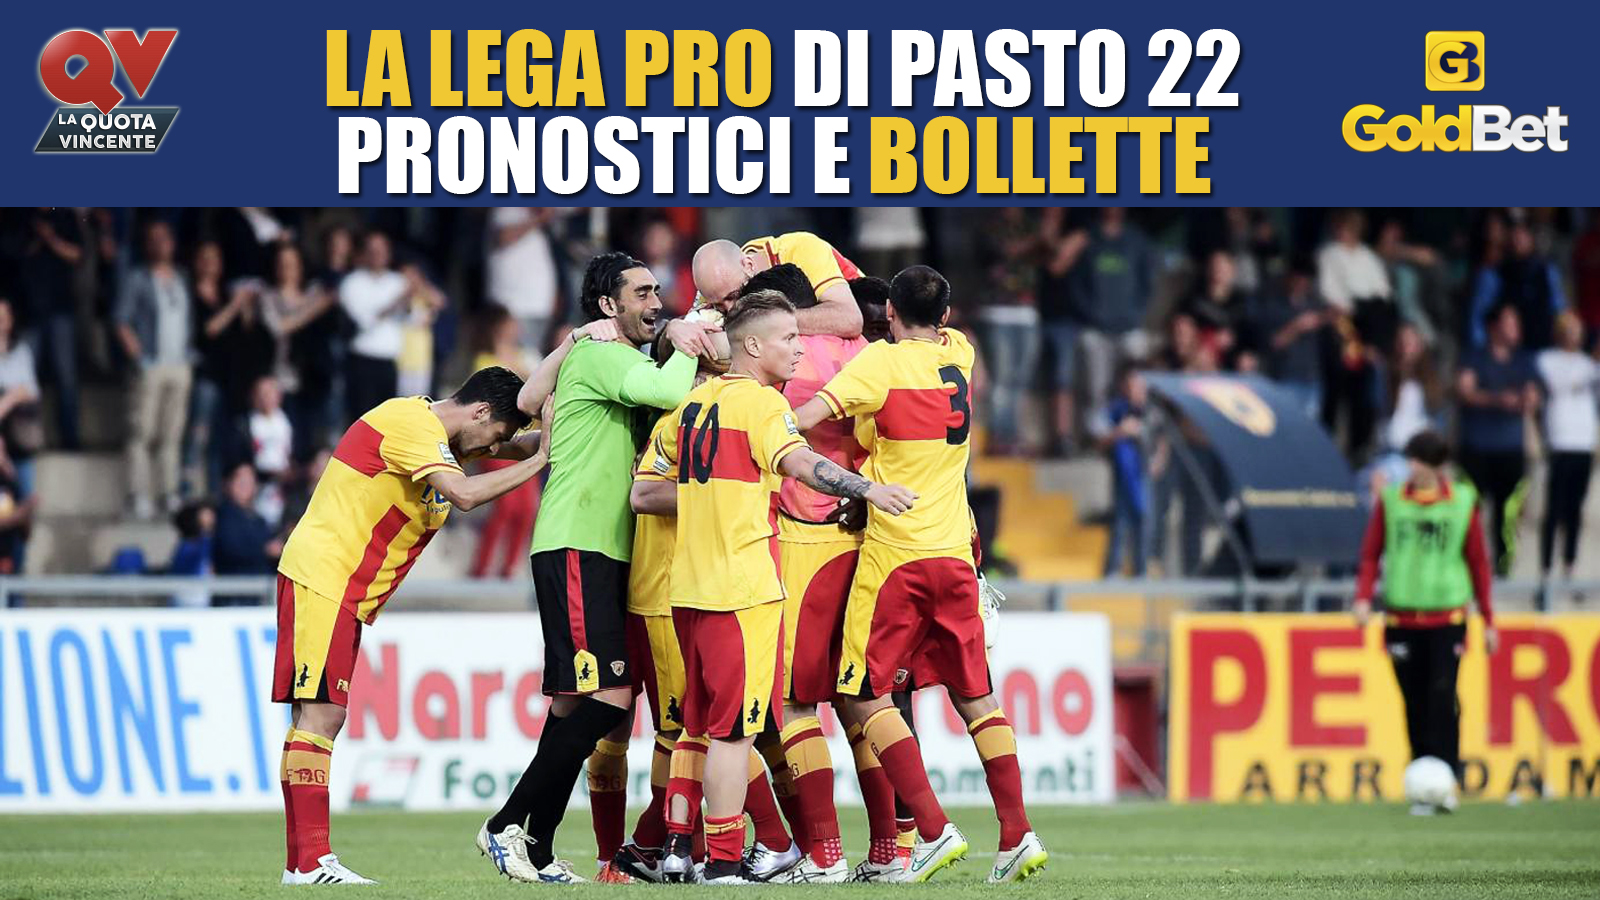 lega_pro_blog_qv_pasto_22_benevento_esultanza_news_scommesse_bollette_calcio